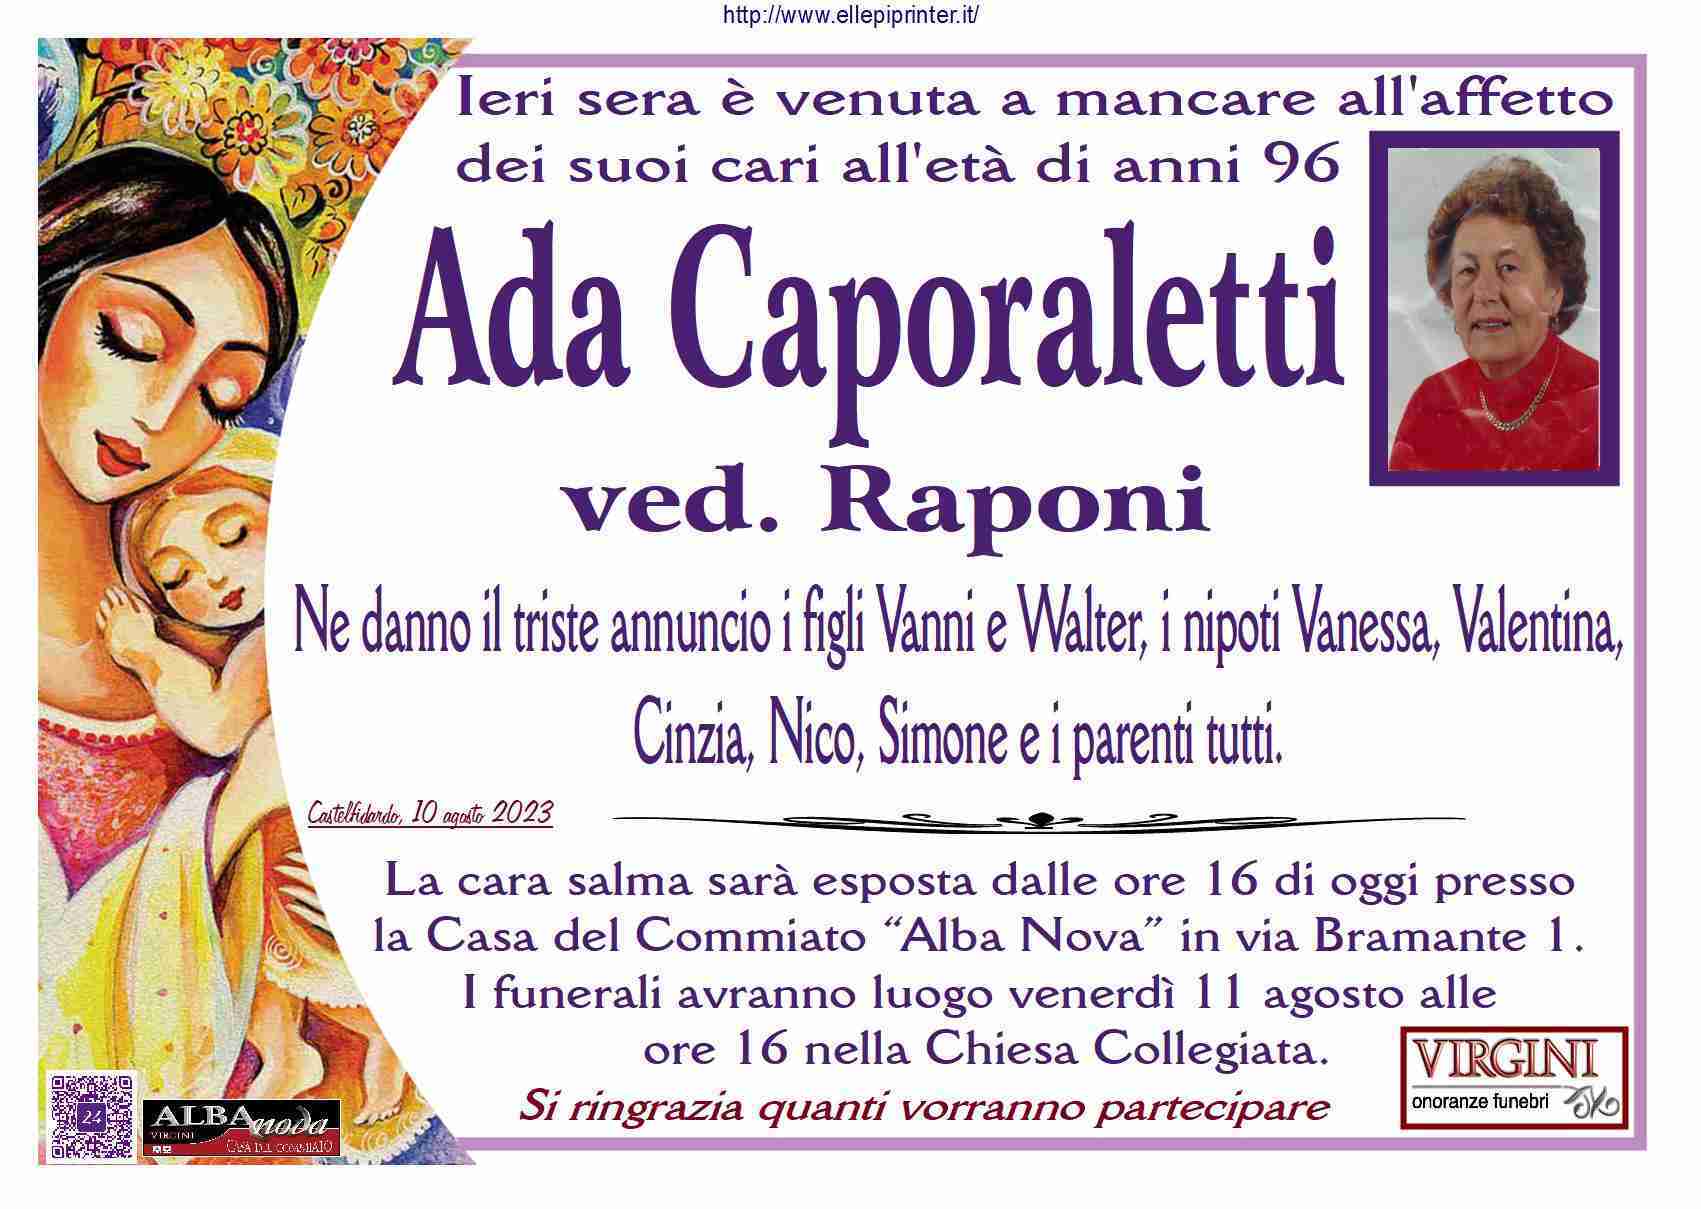 Ada Caporaletti